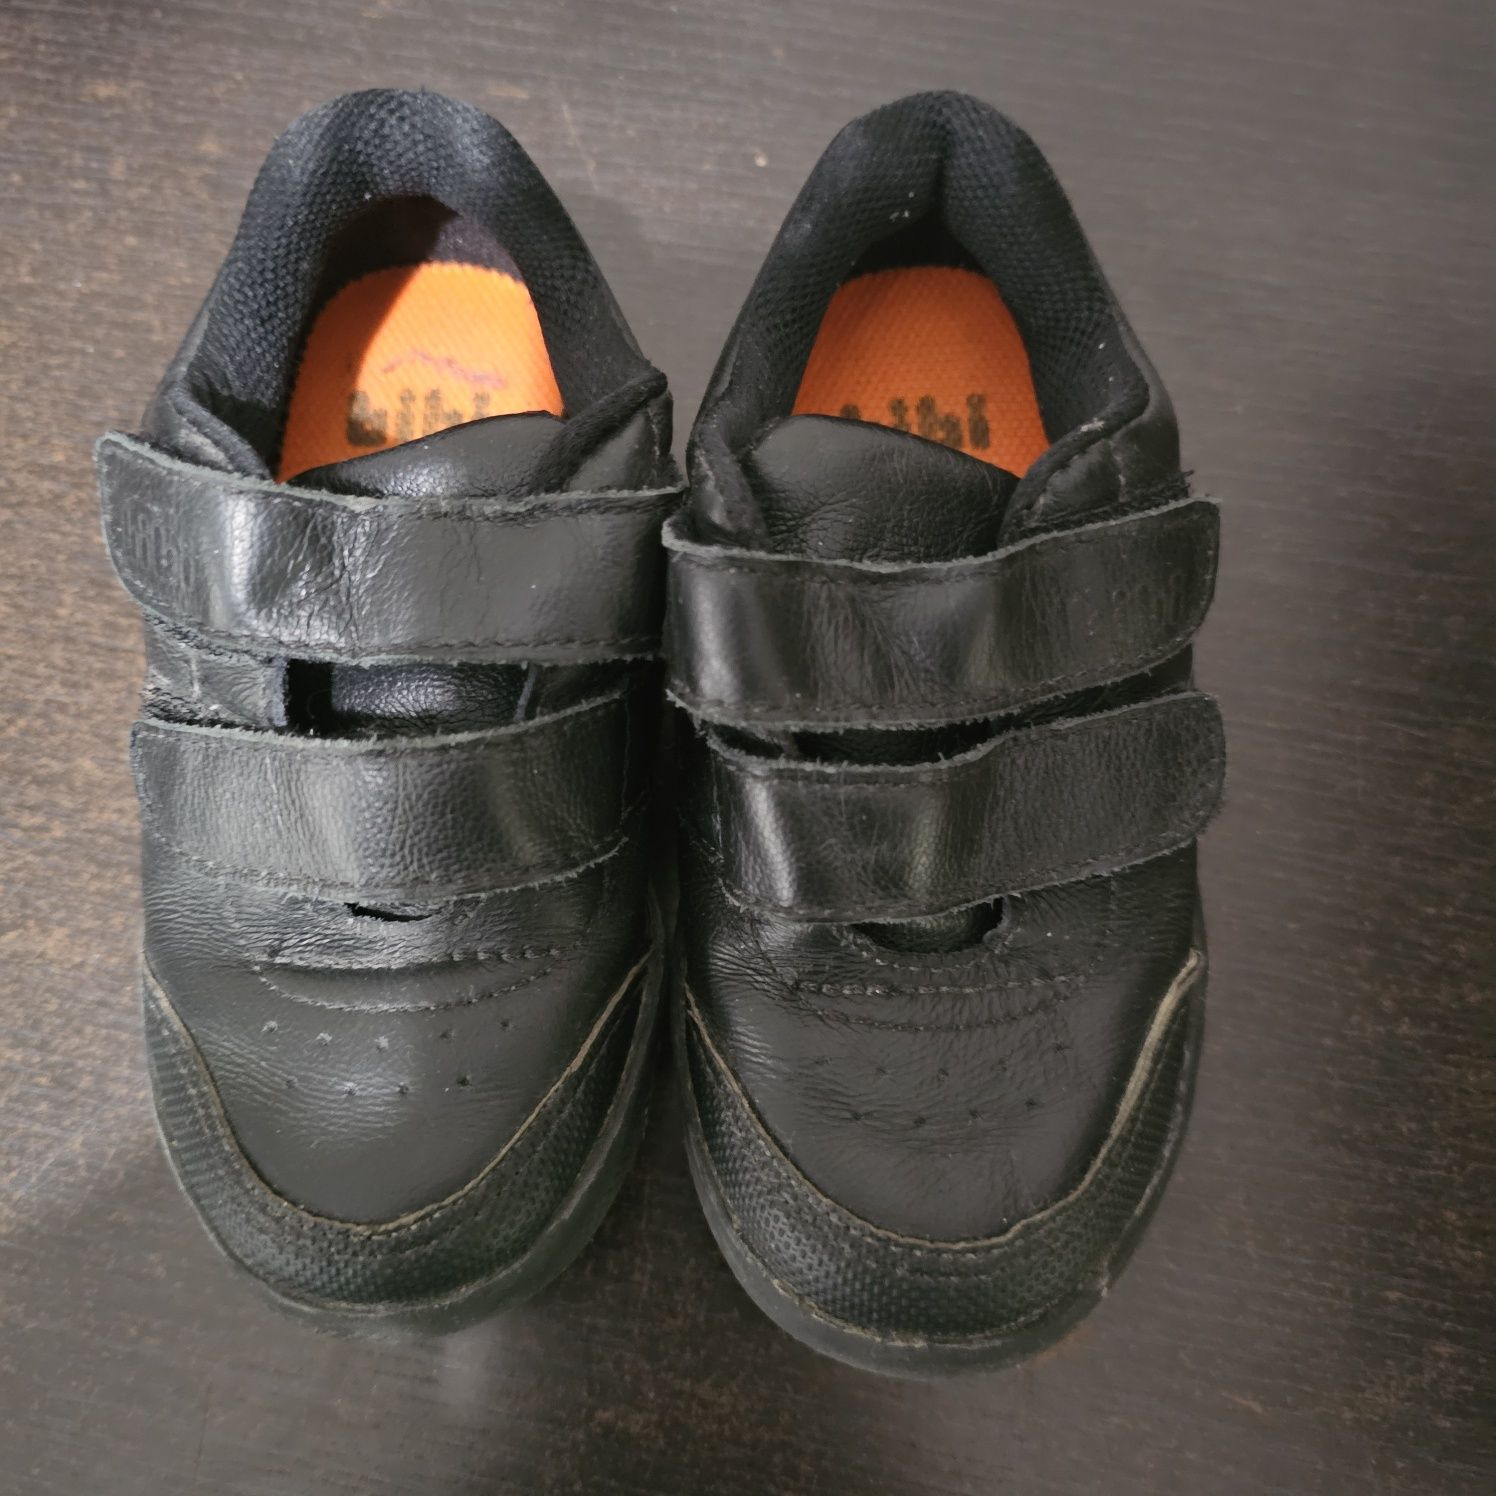 Adidasi bibi shoes mărimea 26